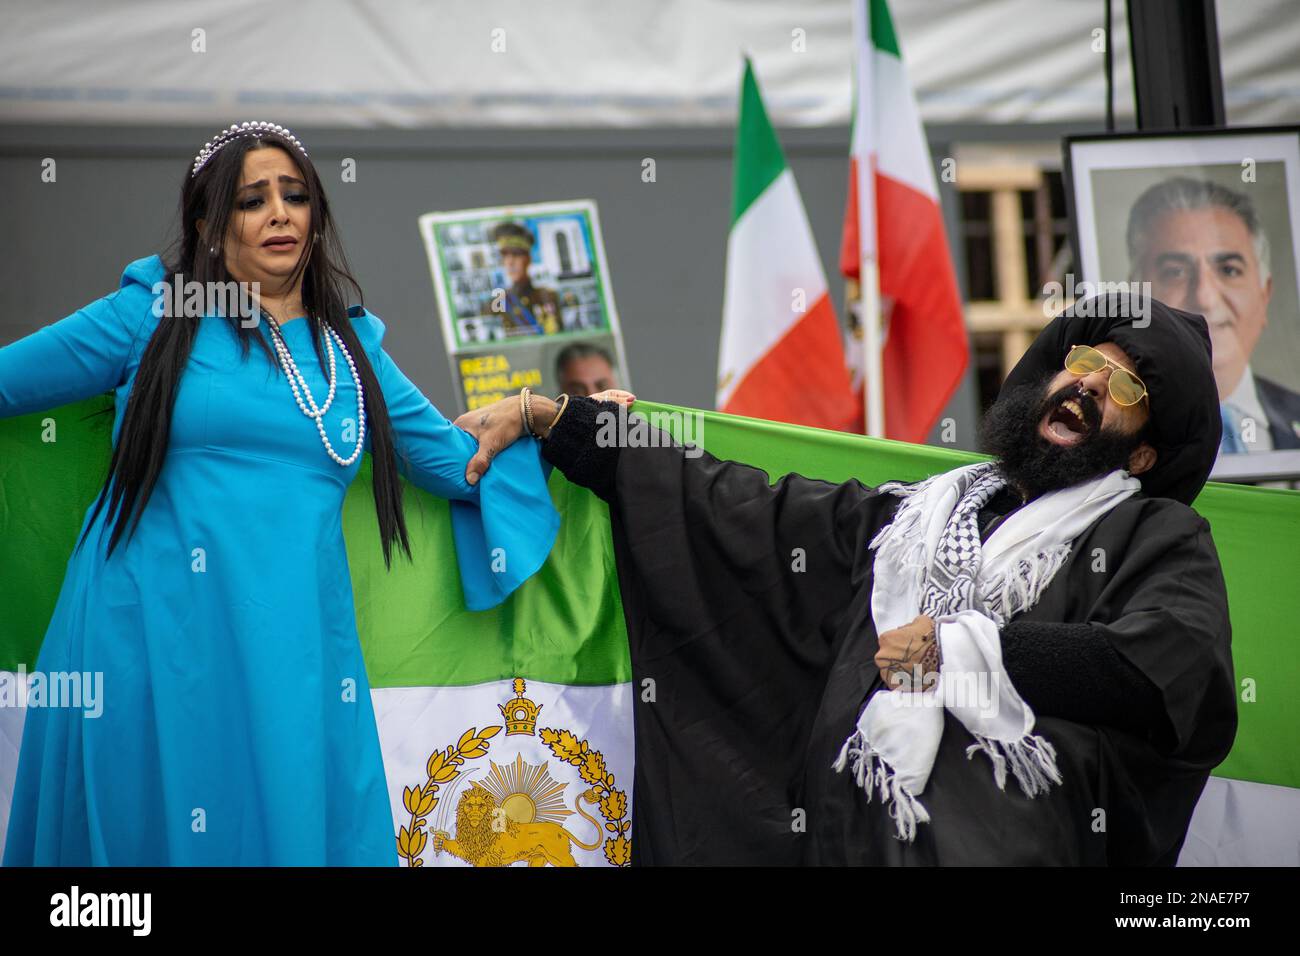 Les manifestants iraniens ont célébré l'anniversaire de la Révolution islamique de 44th, en revendiquant la liberté prise par l'ayatollah d'une jeune fille iranienne. Crédit: Sinai Noor/Alamy Banque D'Images